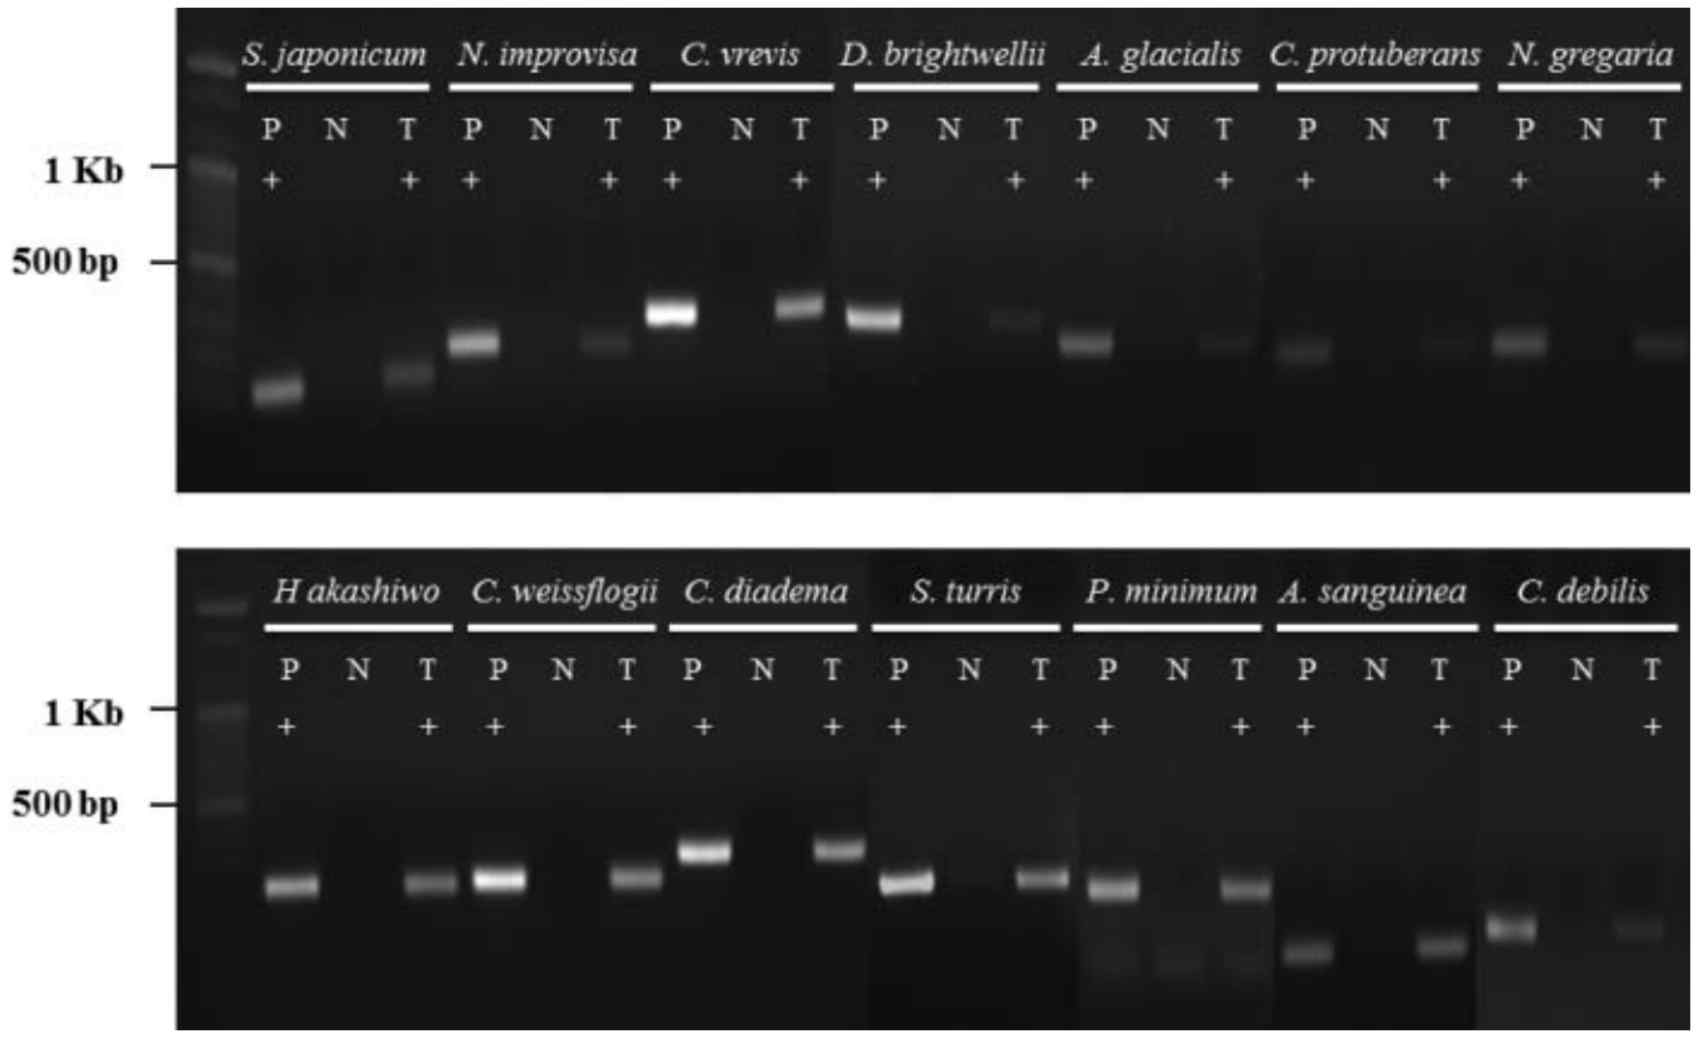 종특이적인 PCR 프라이머의 검증 P: positive control (only target genomic DNA); N: negative control (mixed genomic DNA excluding target DNA); T: treatment (mixed genomic DNA including target DNA)